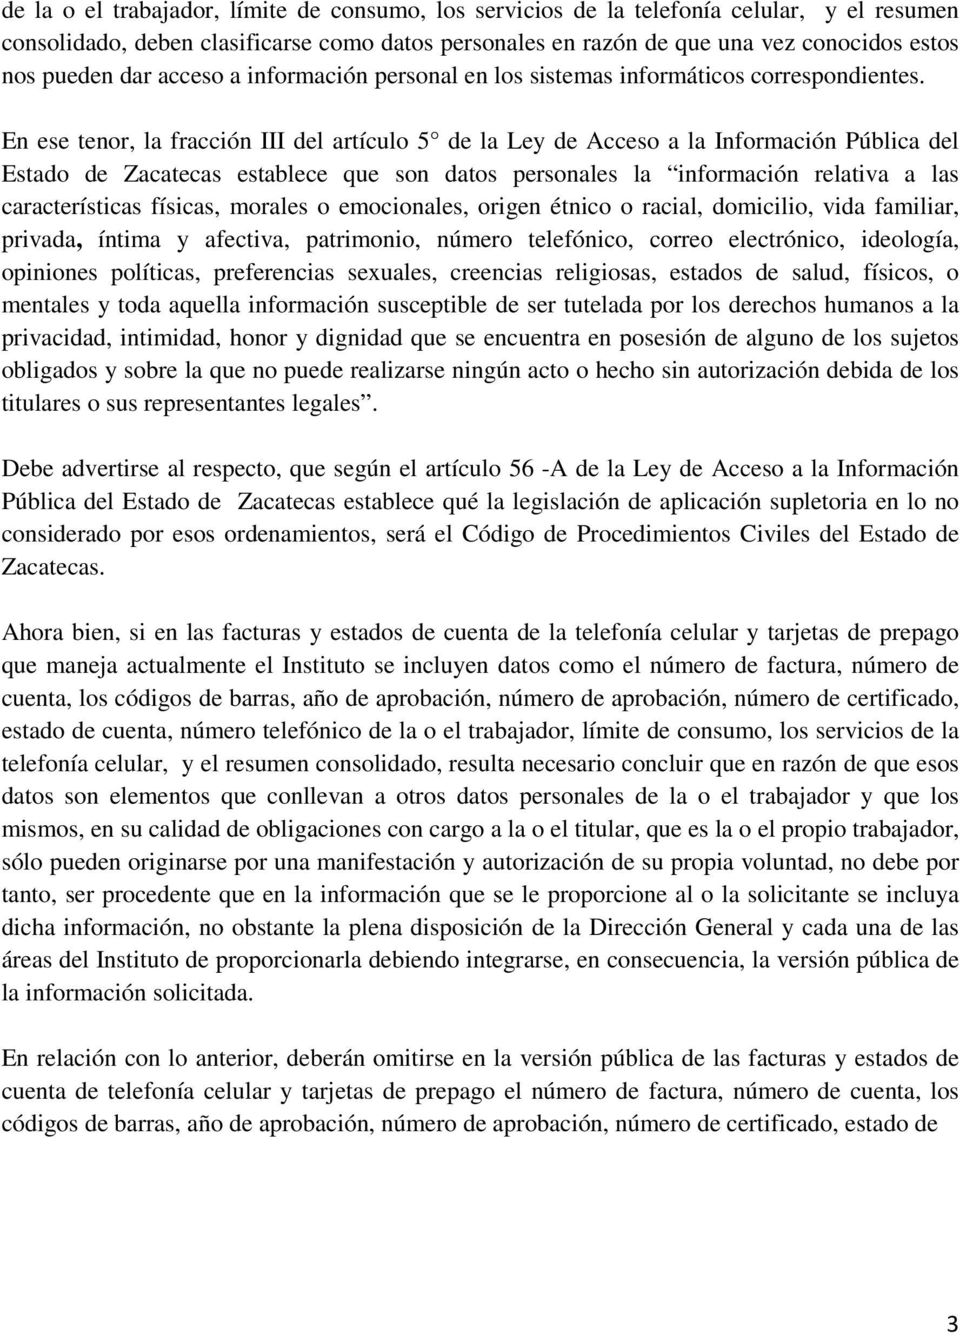 En ese tenor, la fracción III del artículo 5 de la Ley de Acceso a la Información Pública del Estado de Zacatecas establece que son datos personales la información relativa a las características